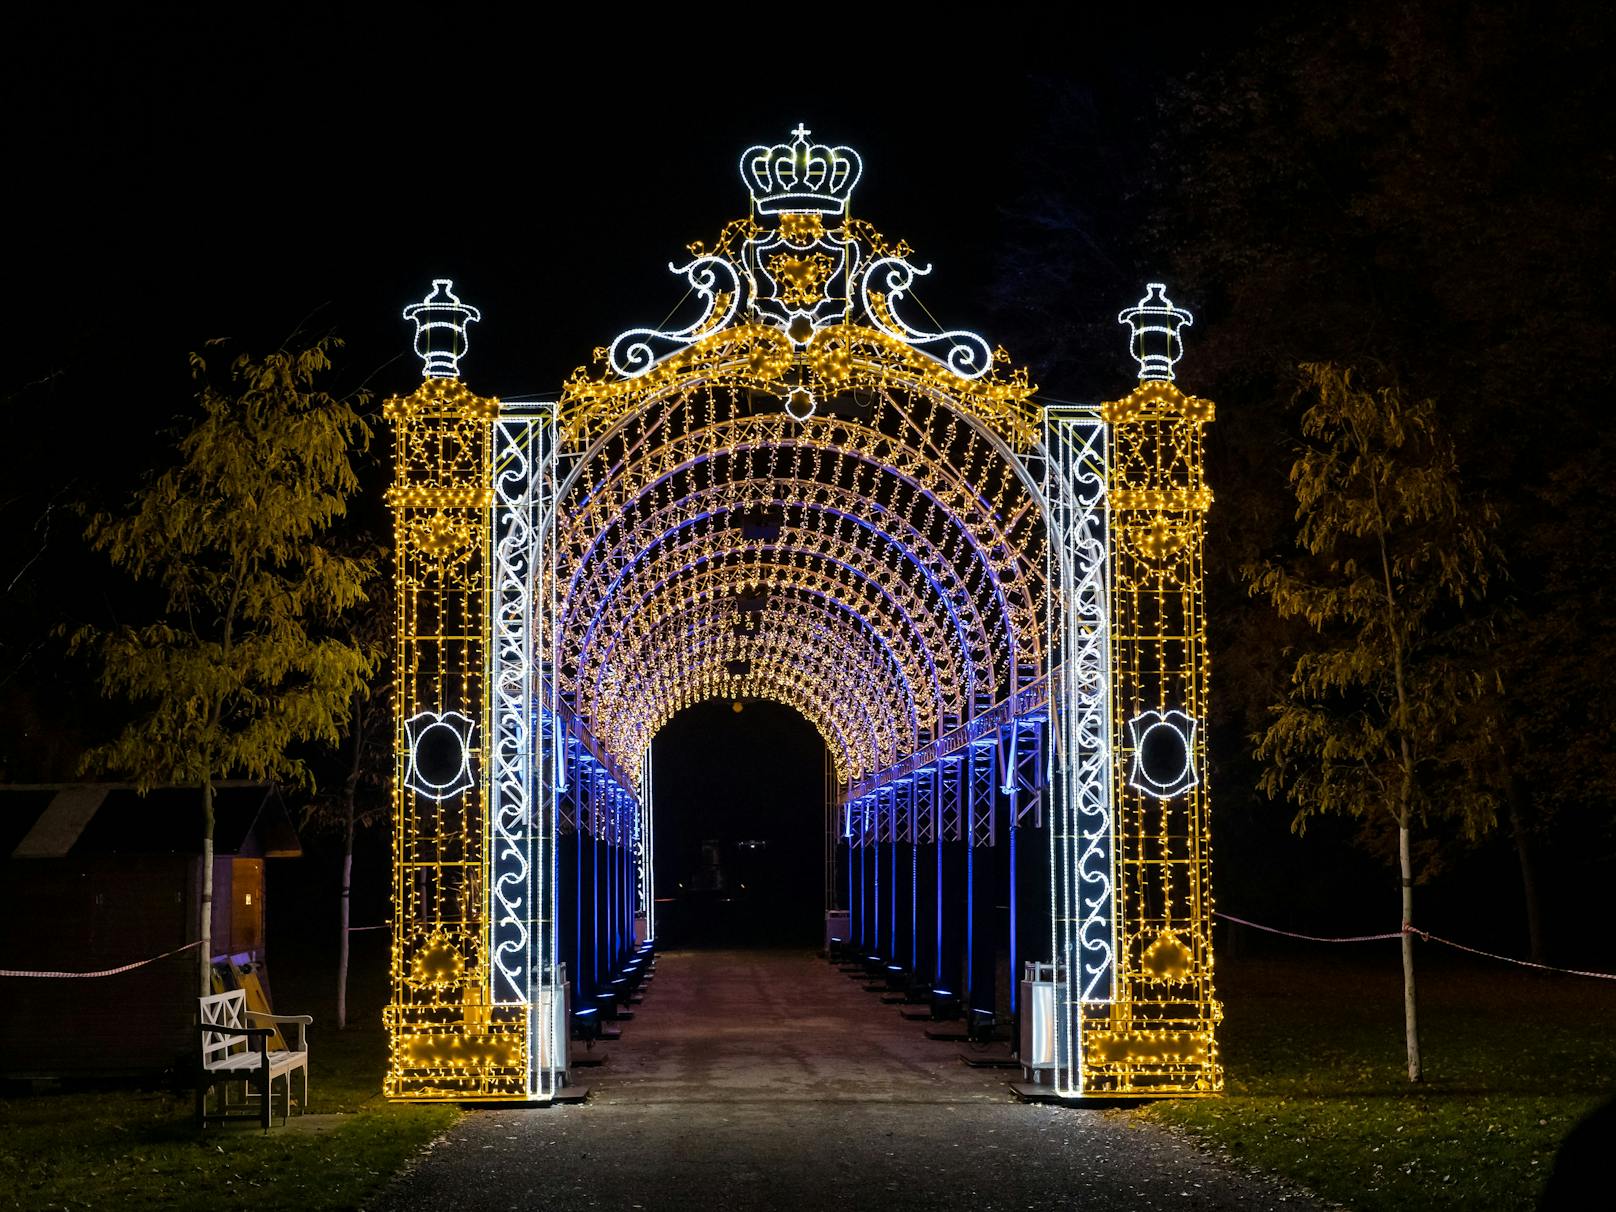 Die Lichtshow "Illumina" im Schlosspark Laxenburg (NÖ) wird bis 30. Jänner verlängert.